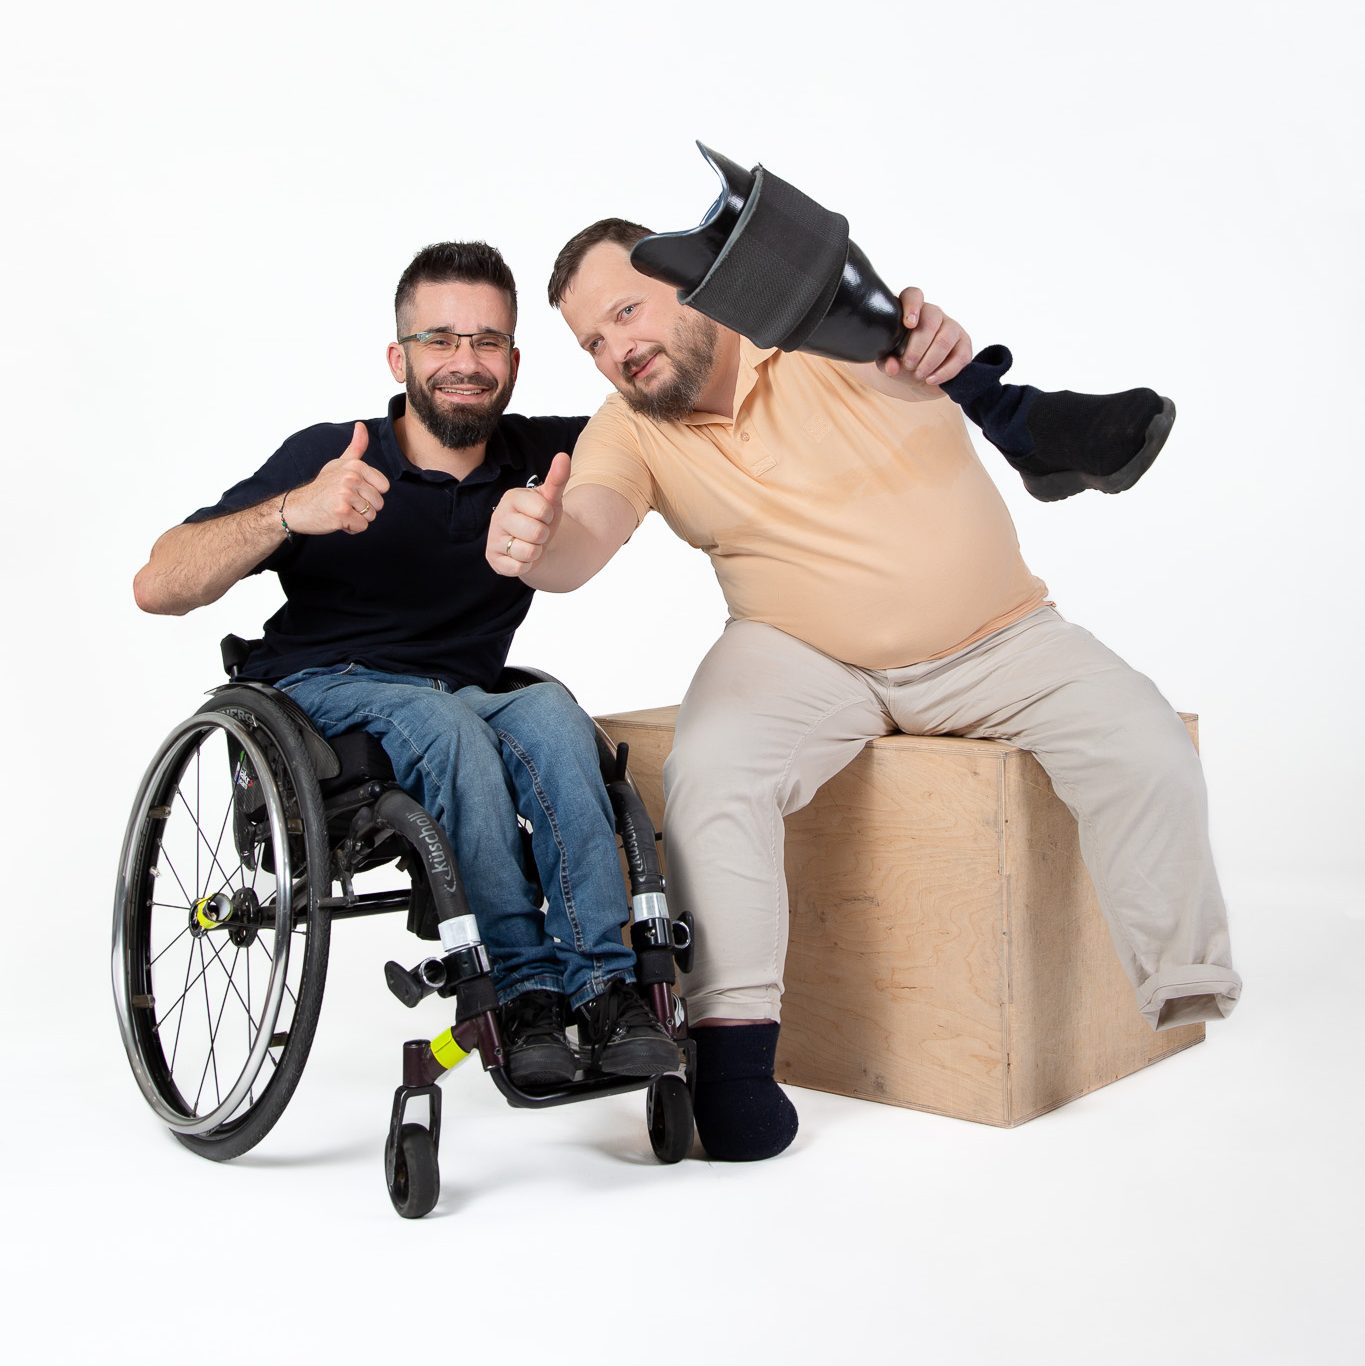 Na zdjęciu dwóch mężczyzn - siedzą przodem do obiektywu, unoszą kciuki w górę i uśmiechają się. Jeden z nich siedzi na wózku, a drugi siedzi na skrzyni do ćwiczeń i trzyma w ręku protezę nogi.